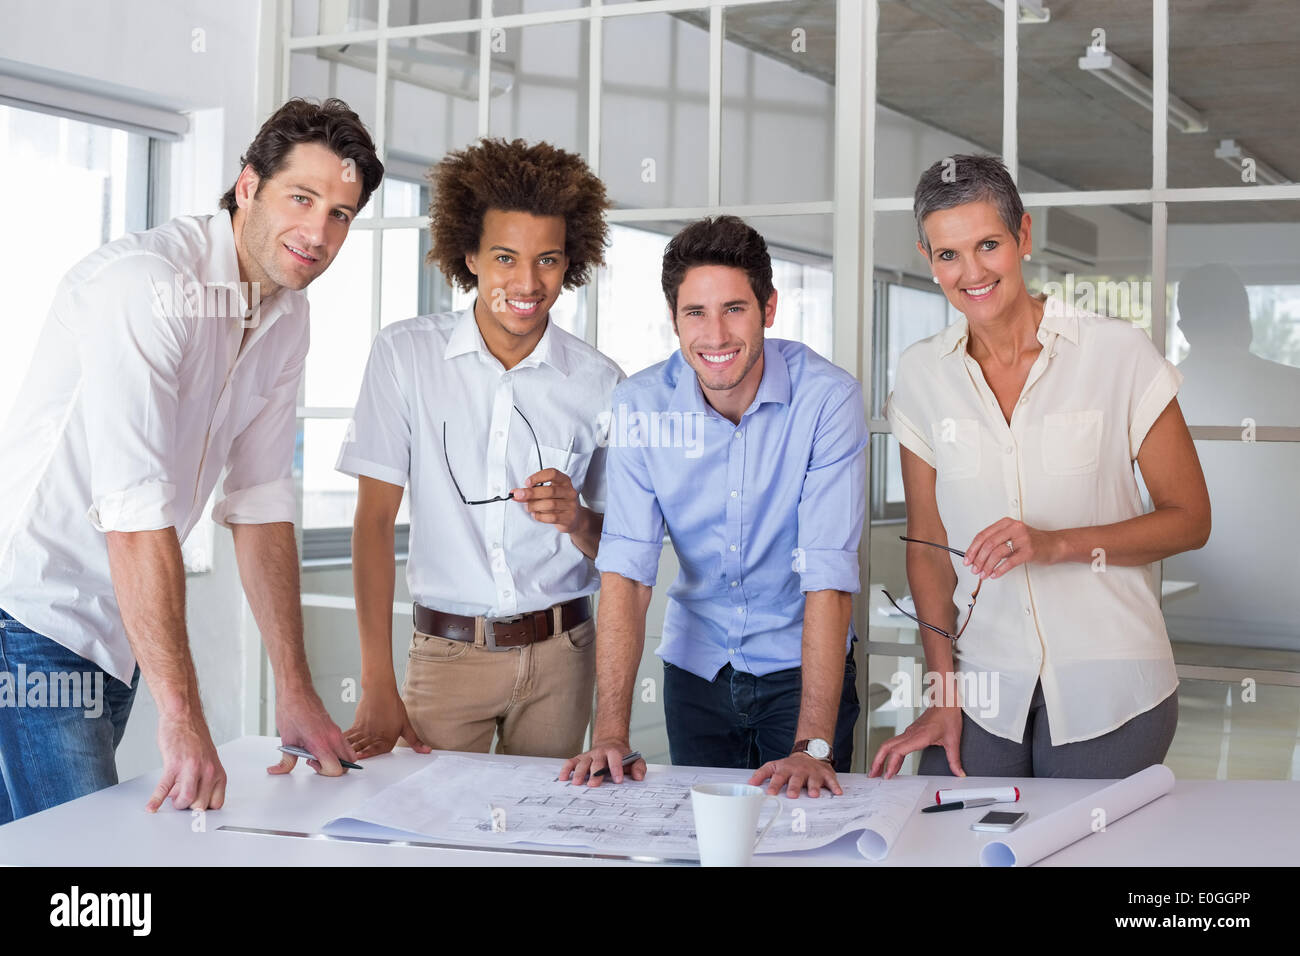 Architektenteam lächelnd in die Kamera Stockfoto